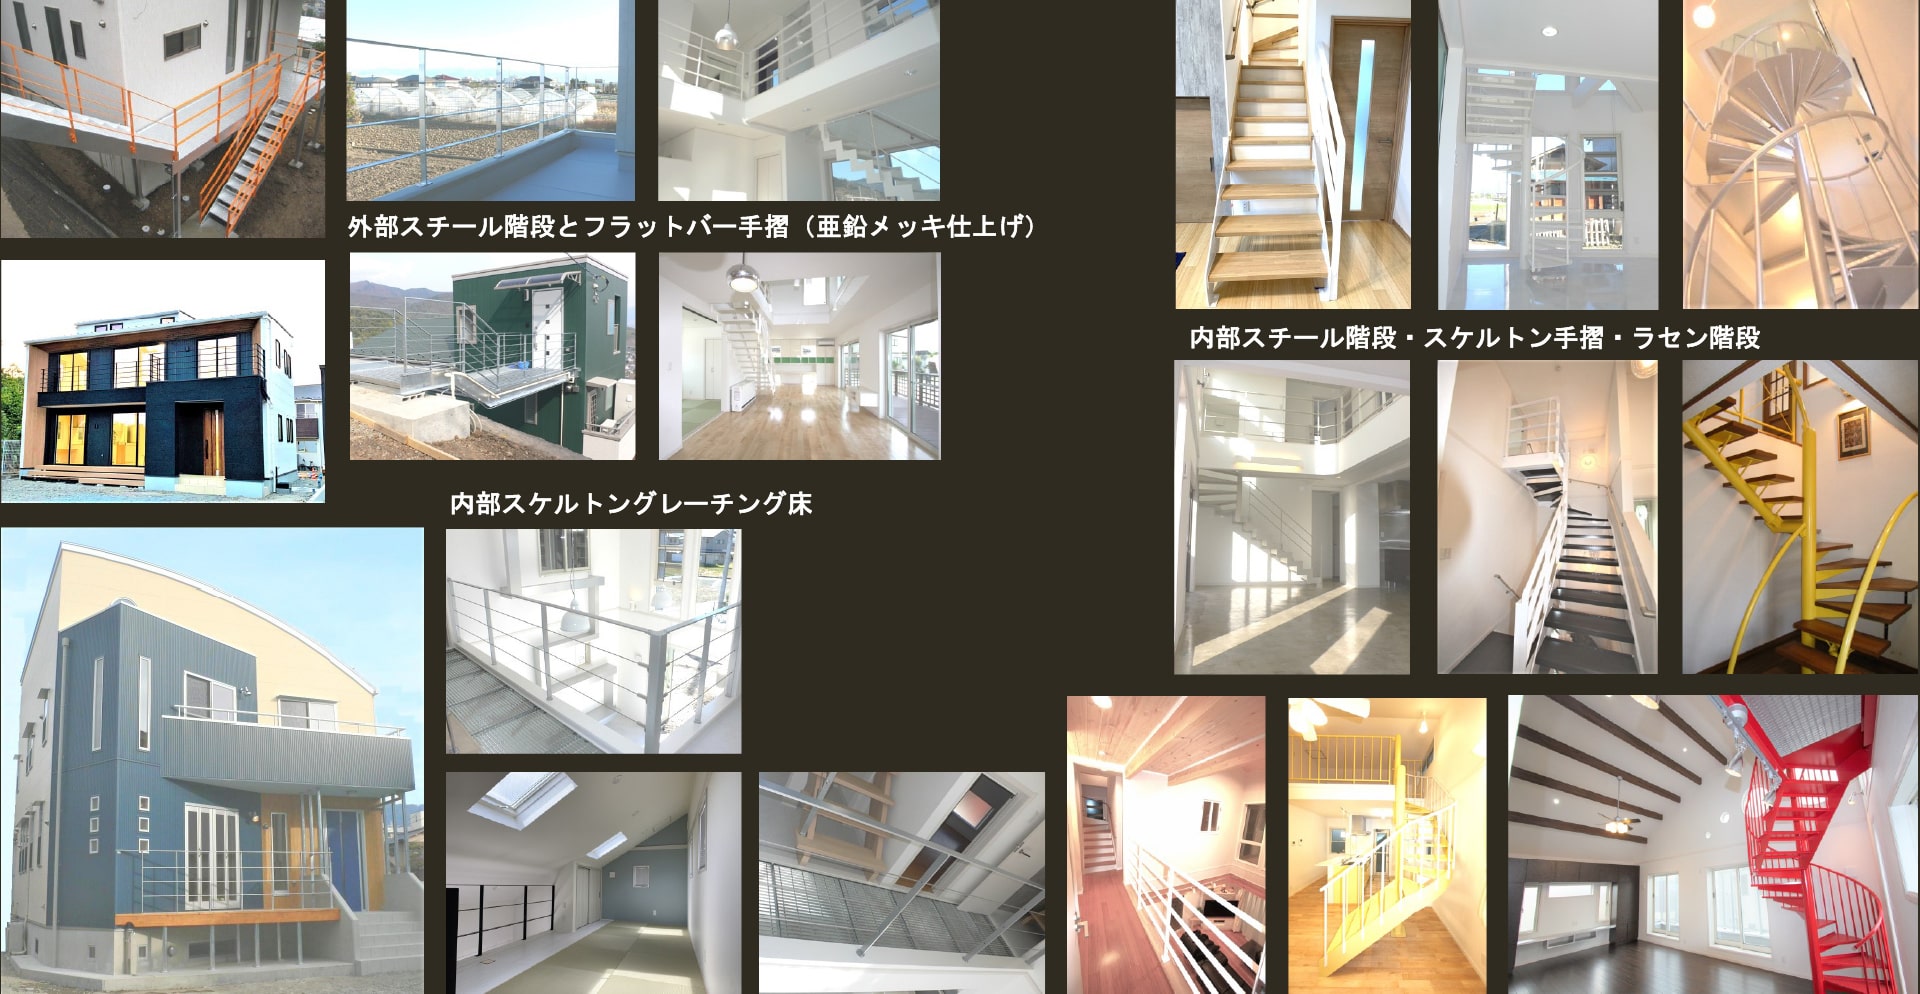 内部スチール階段・スケルトン手摺・ラセン階段などの提案で、多彩な空間を演出します